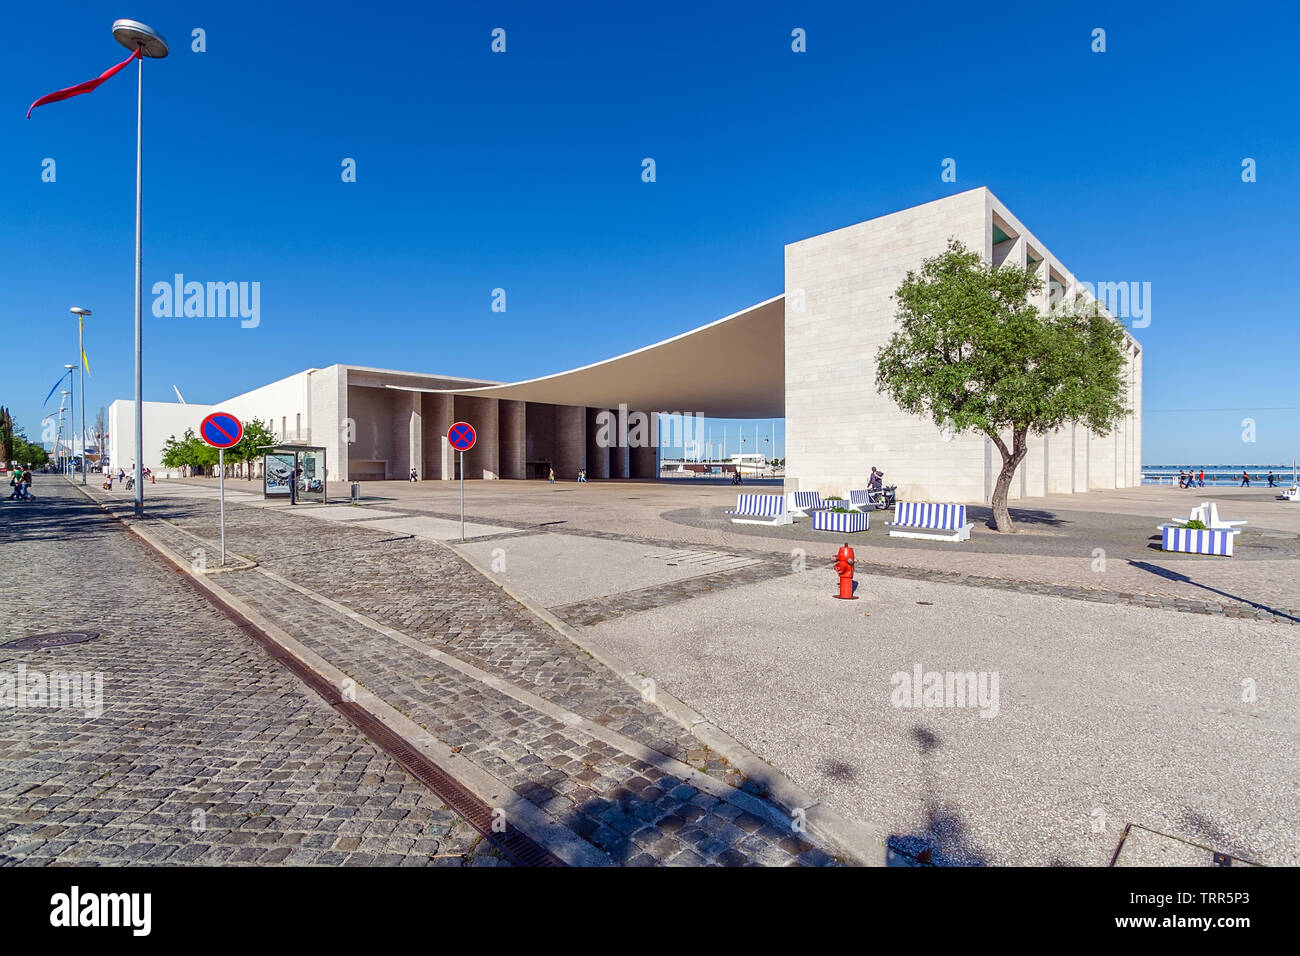 Lissabon, Portugal. Pavilhao de Portugal oder Portugiesischen Pavillon mit berühmten konkrete Vordach. Parque das Nacoes oder Park der Nationen. Von Alvaro Siza Vieira Stockfoto